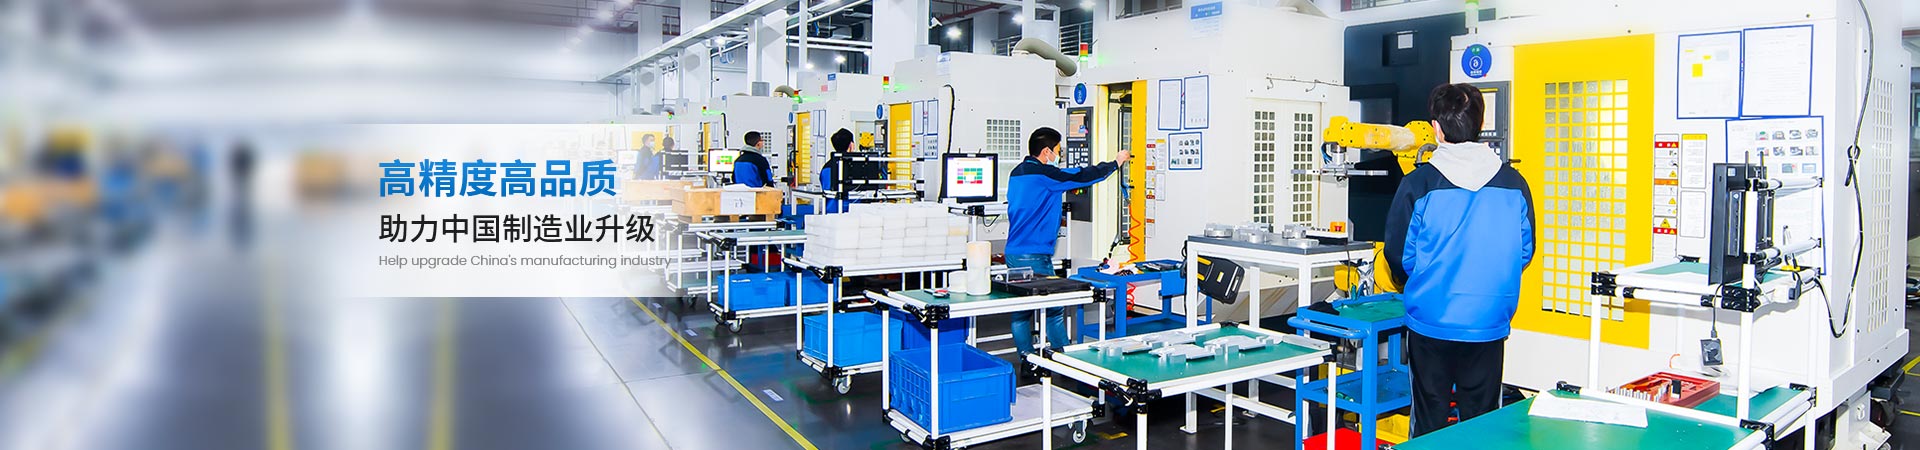 康丽达助力中国制造业升级